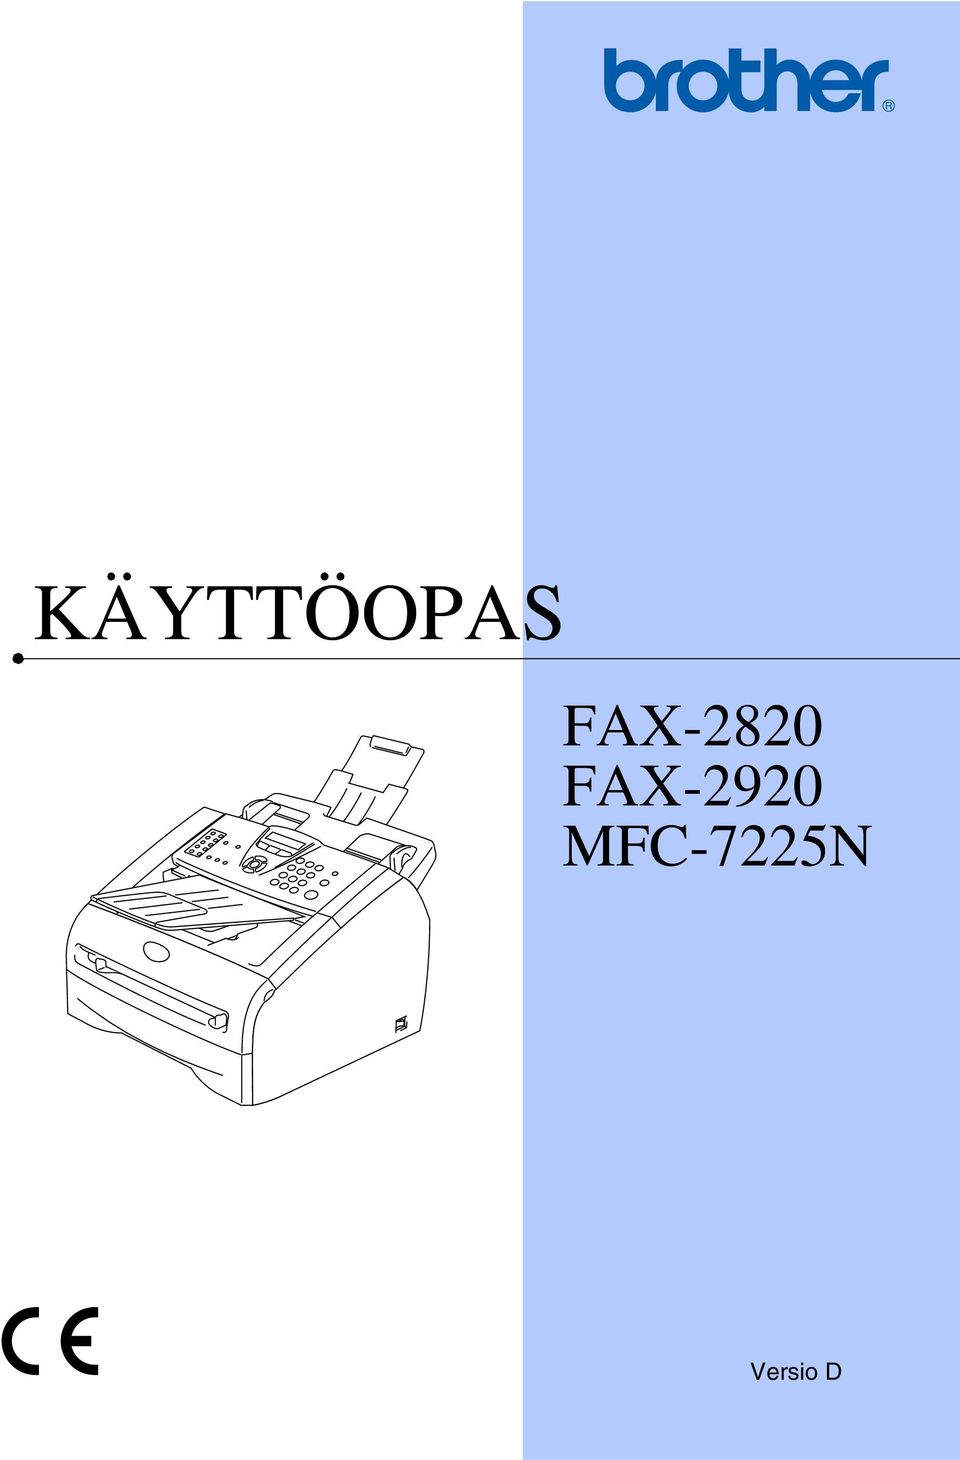 FAX-2920